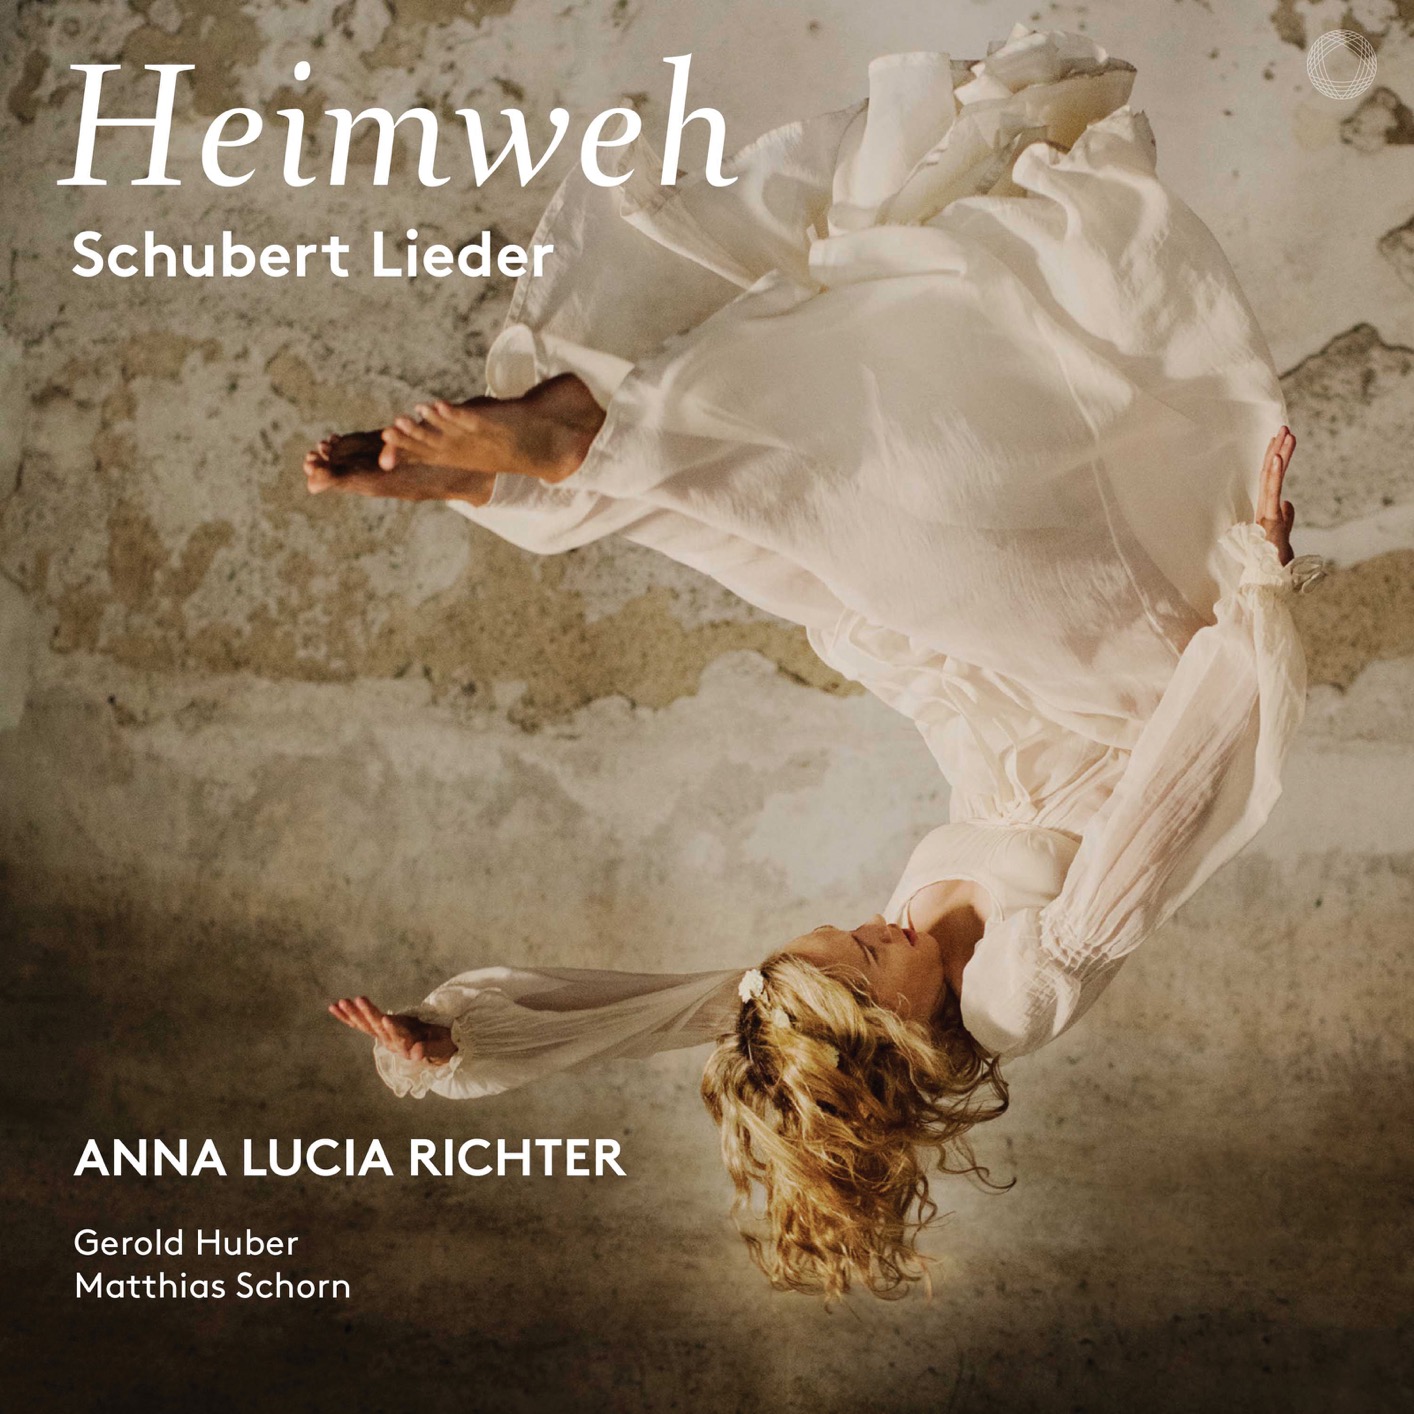 Anna Lucia Richter – Heimweh: Schubert Lieder (2019) [FLAC 24bit/96kHz]